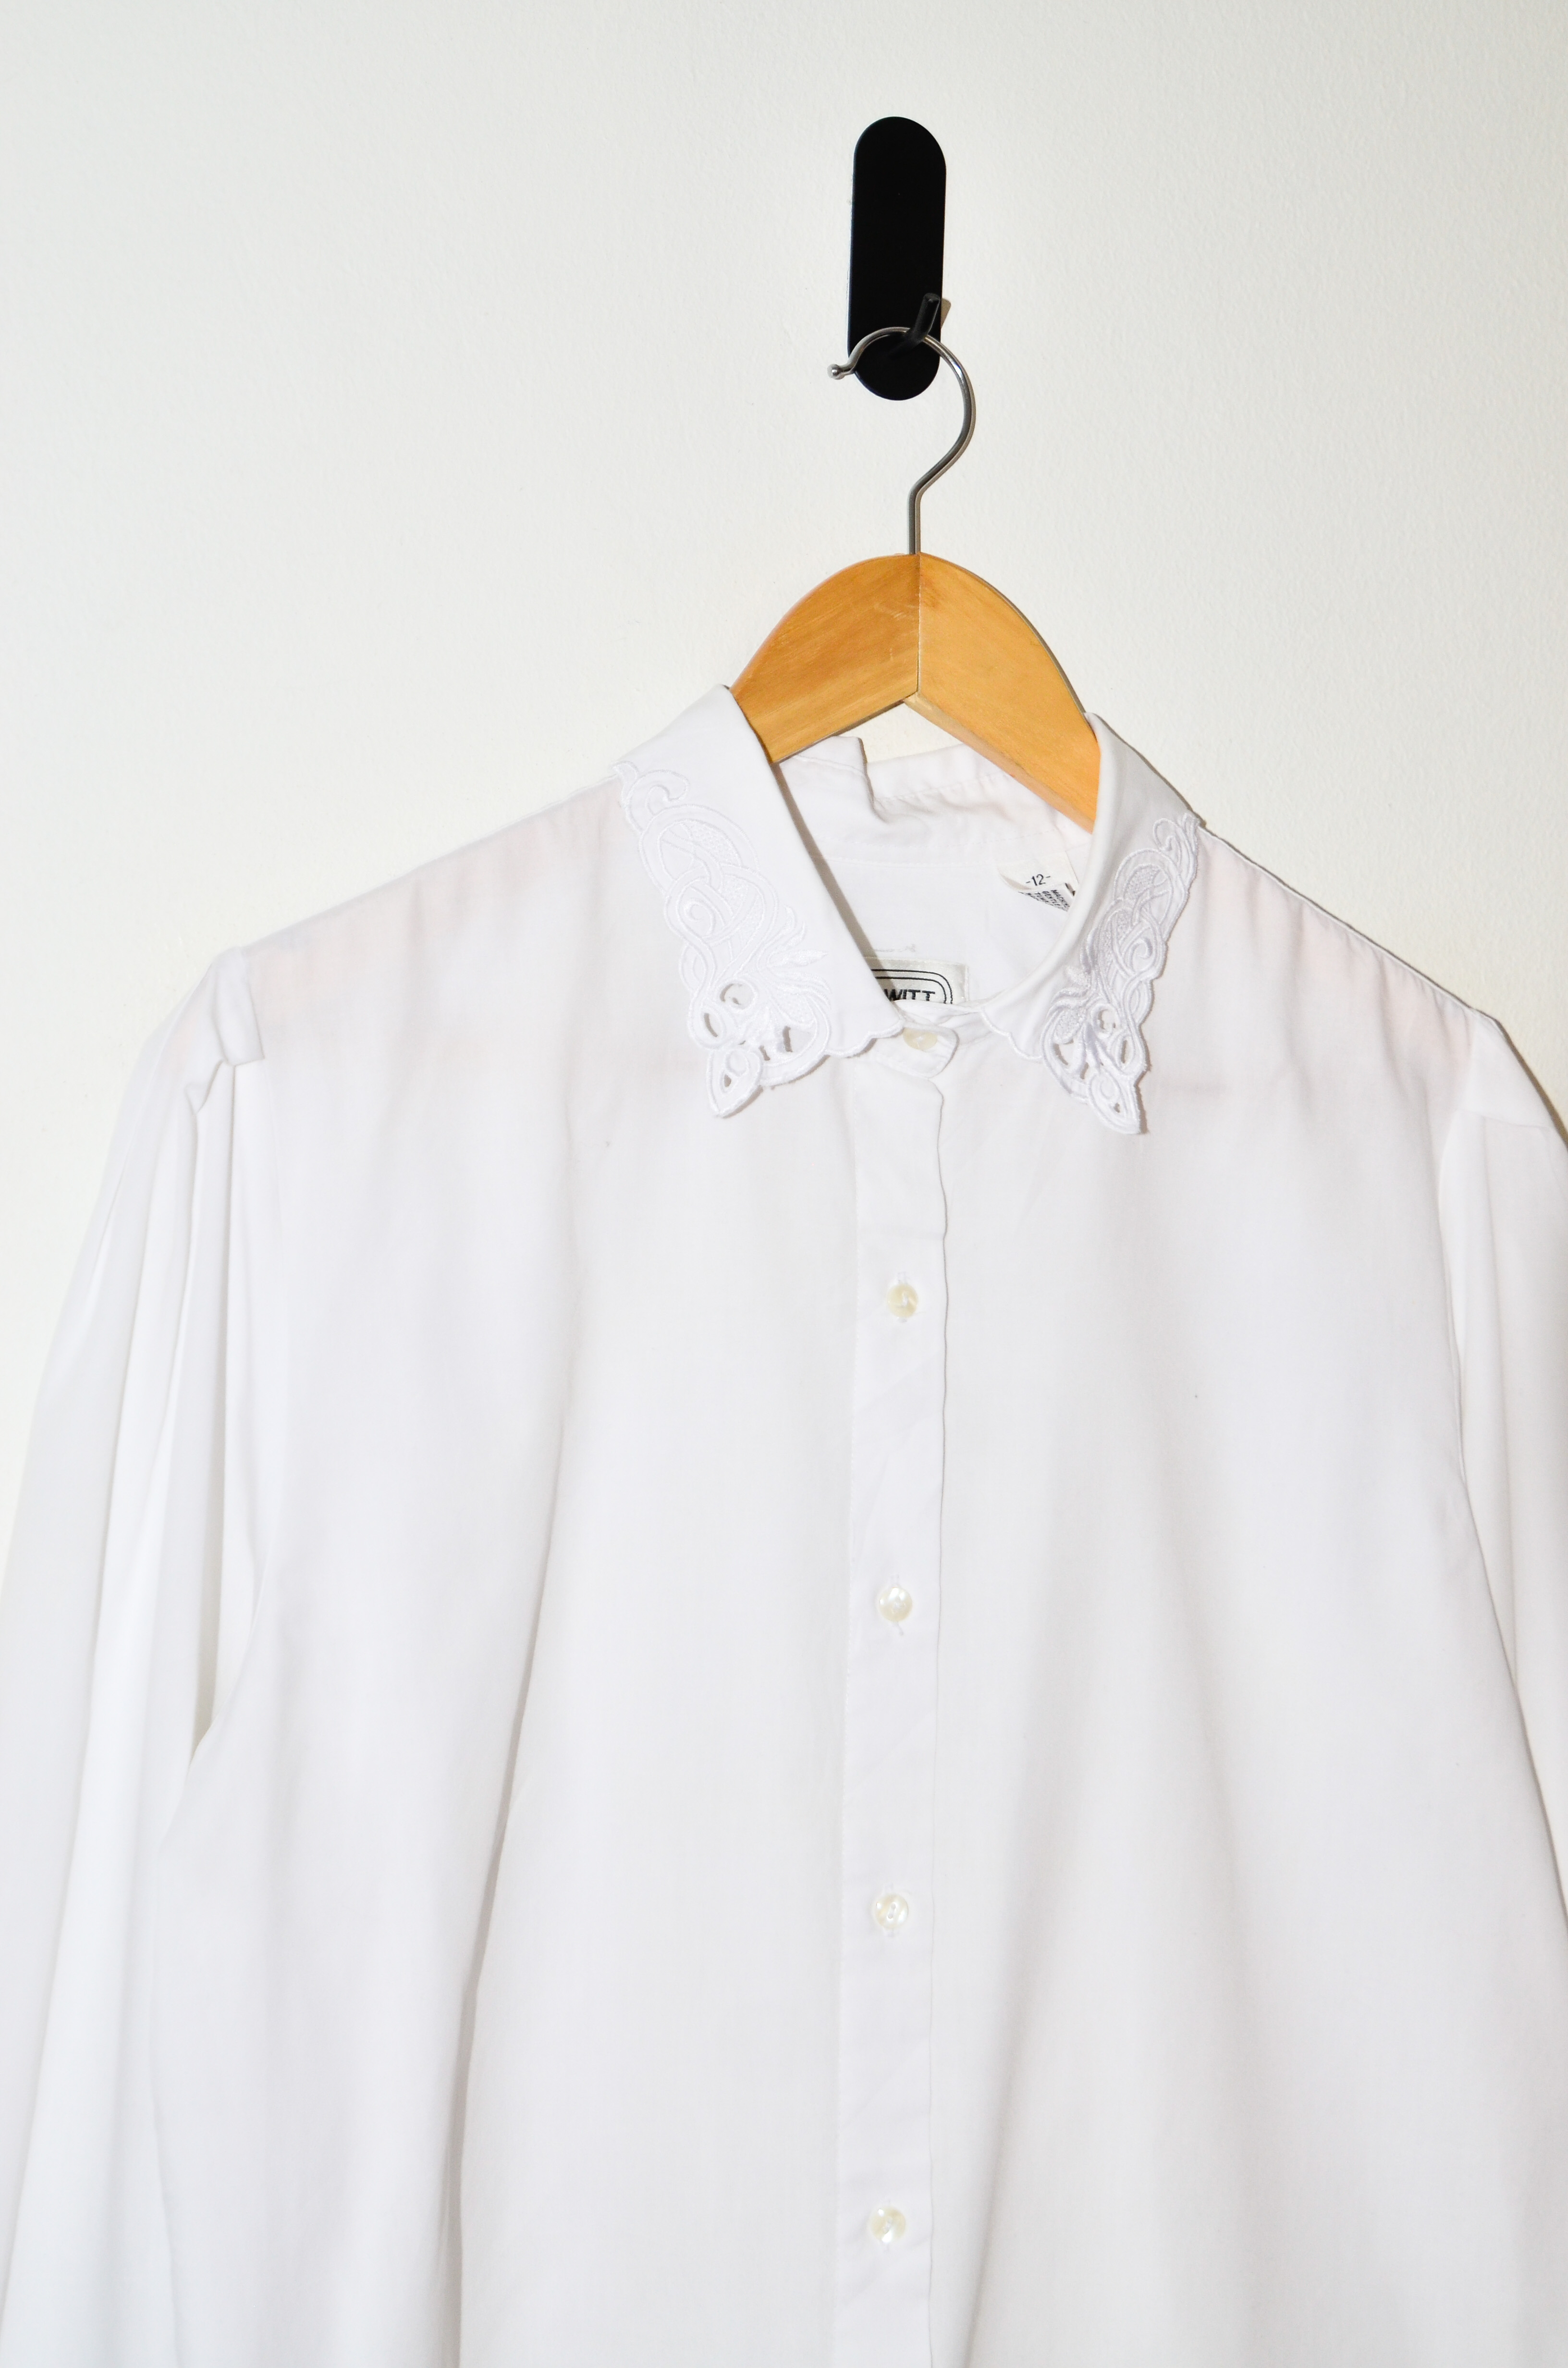 Blusa blanca cuellito bordado